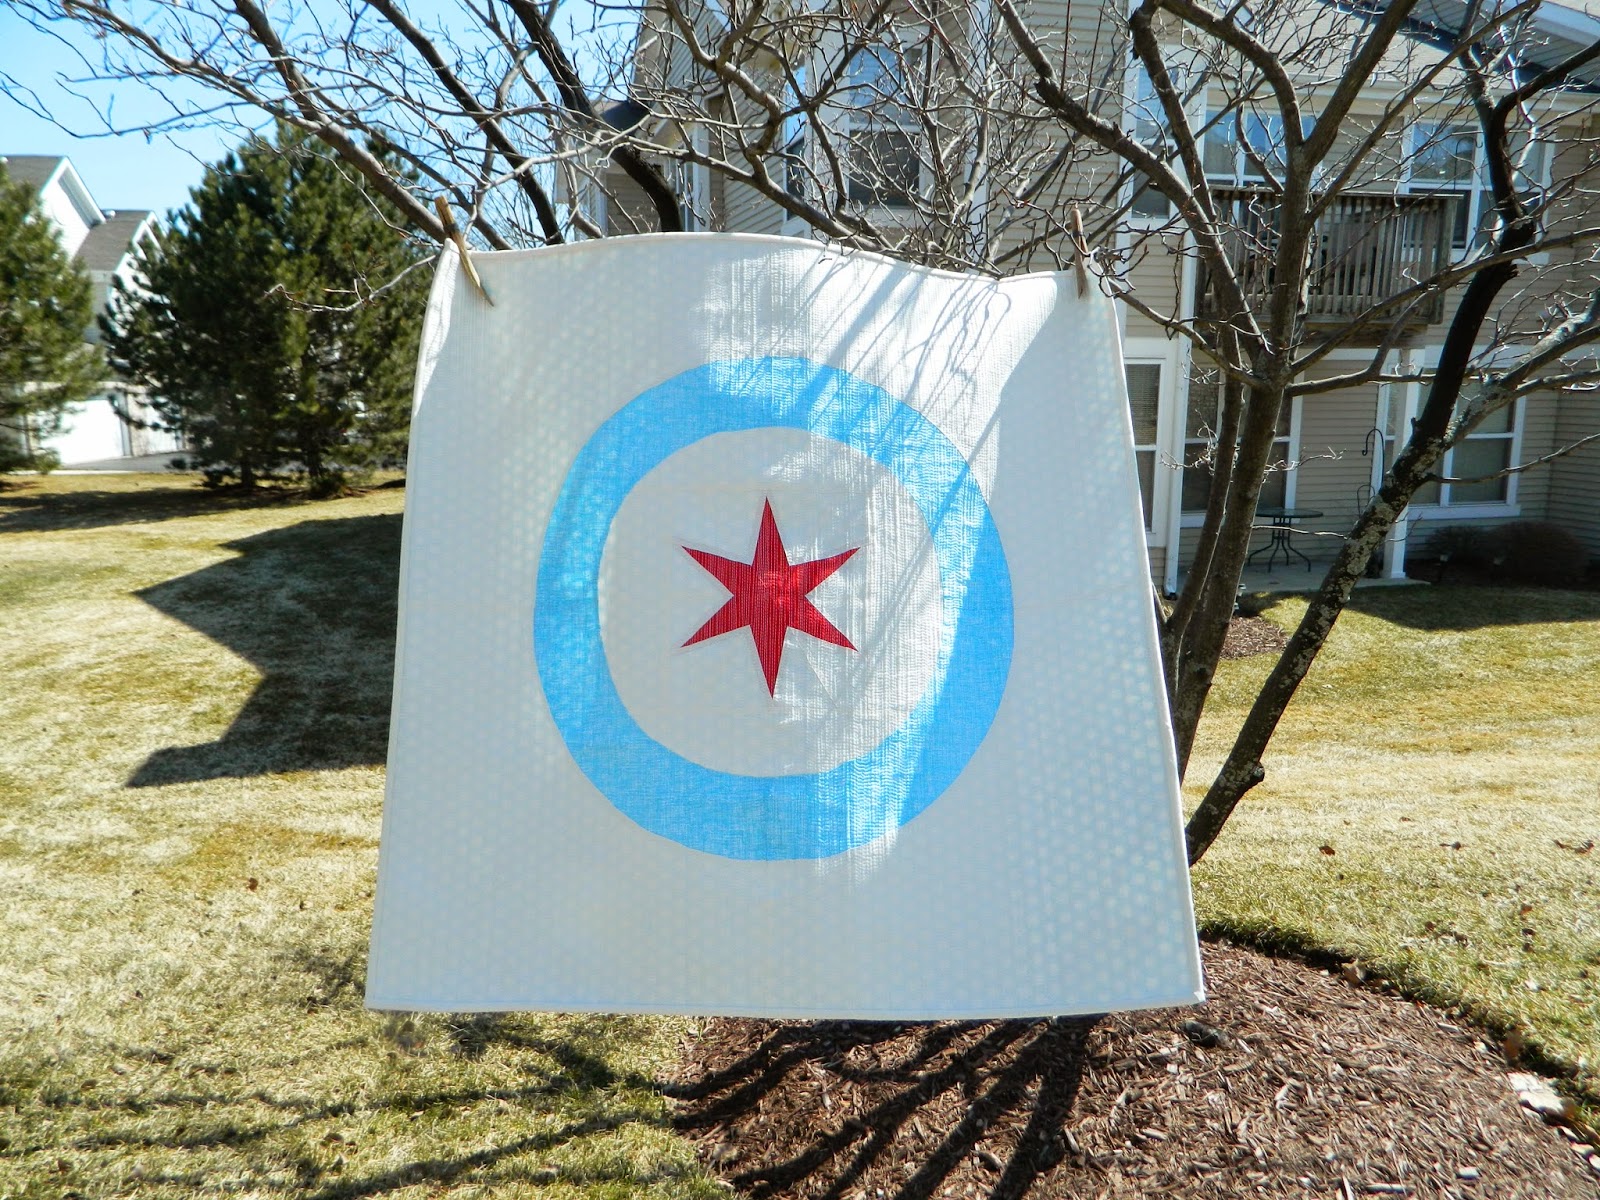 http://sotakhandmade.blogspot.com/2014/03/chicago-flag.html